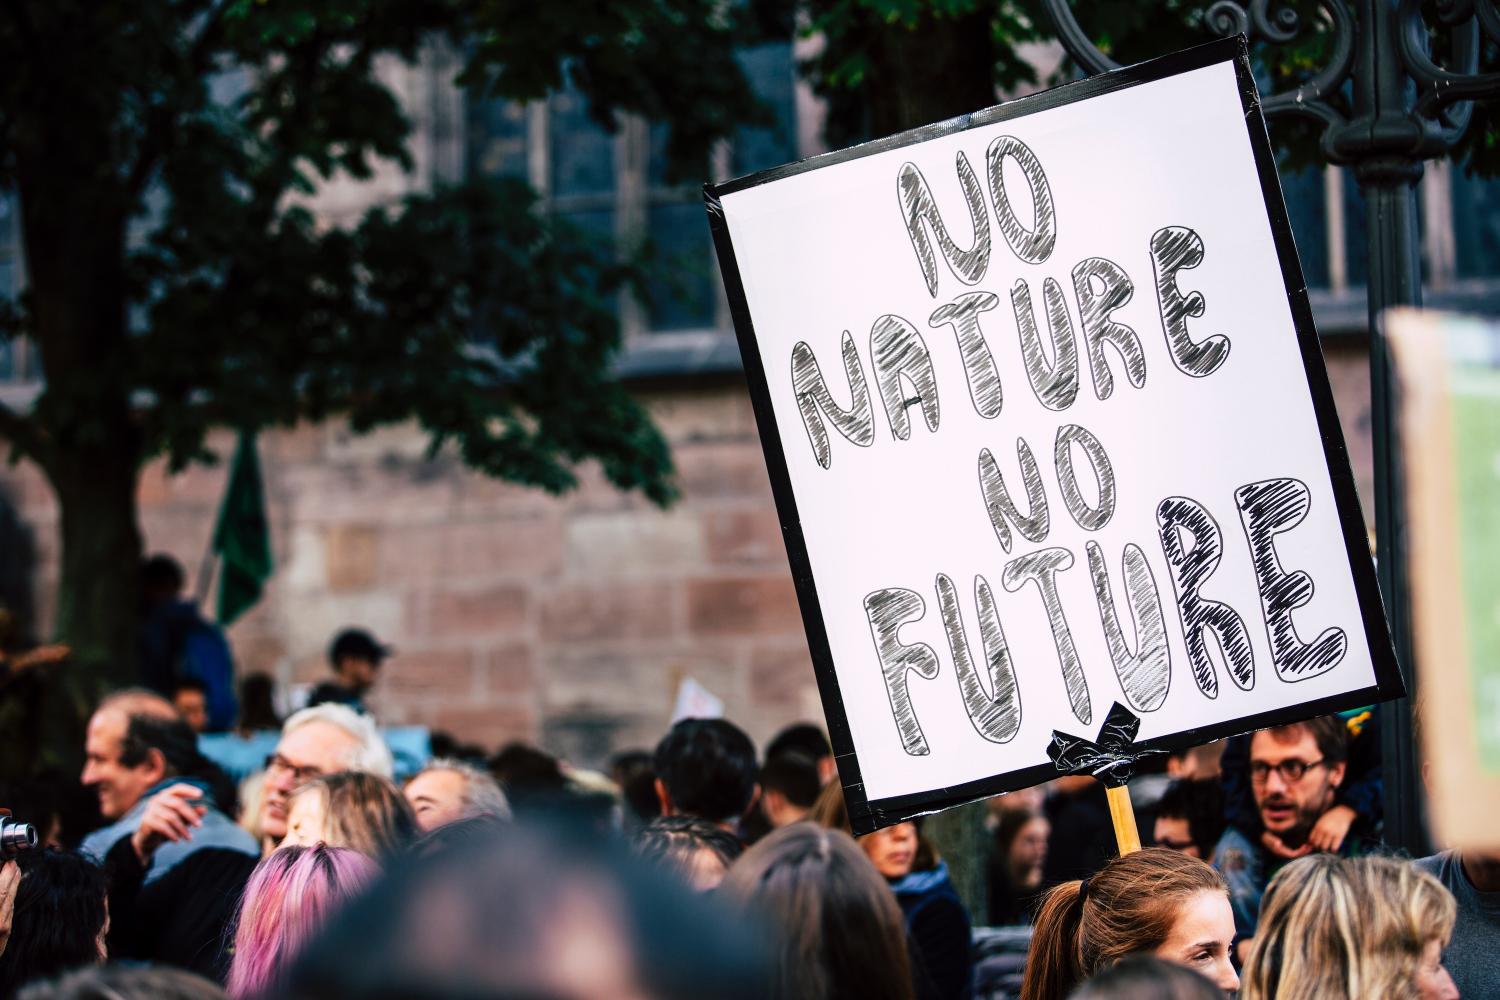 Climate Activism